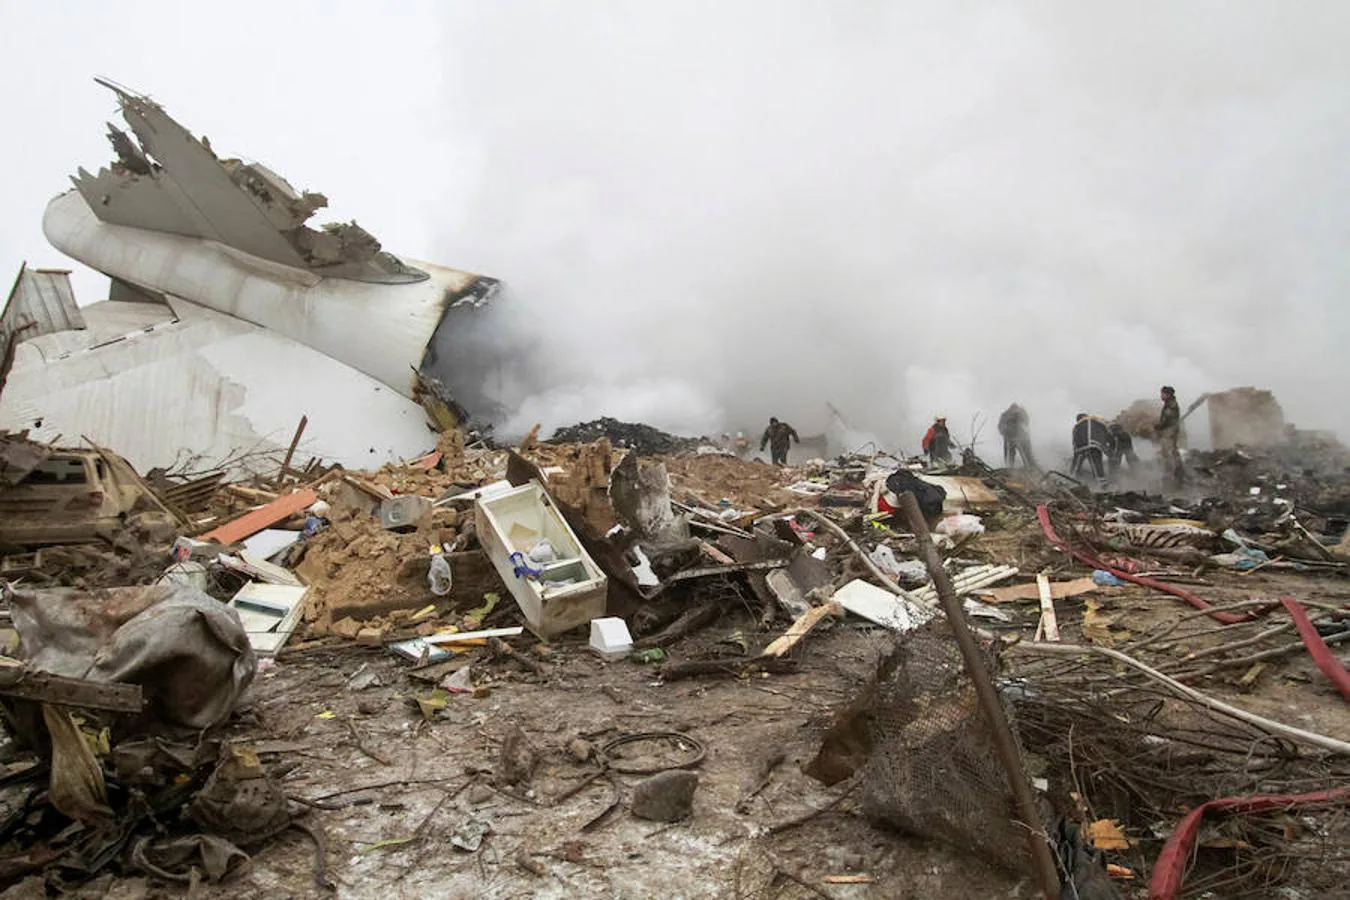 Restos del avión siniestrado entre los de las viviendas destruidas y la densa niebla.